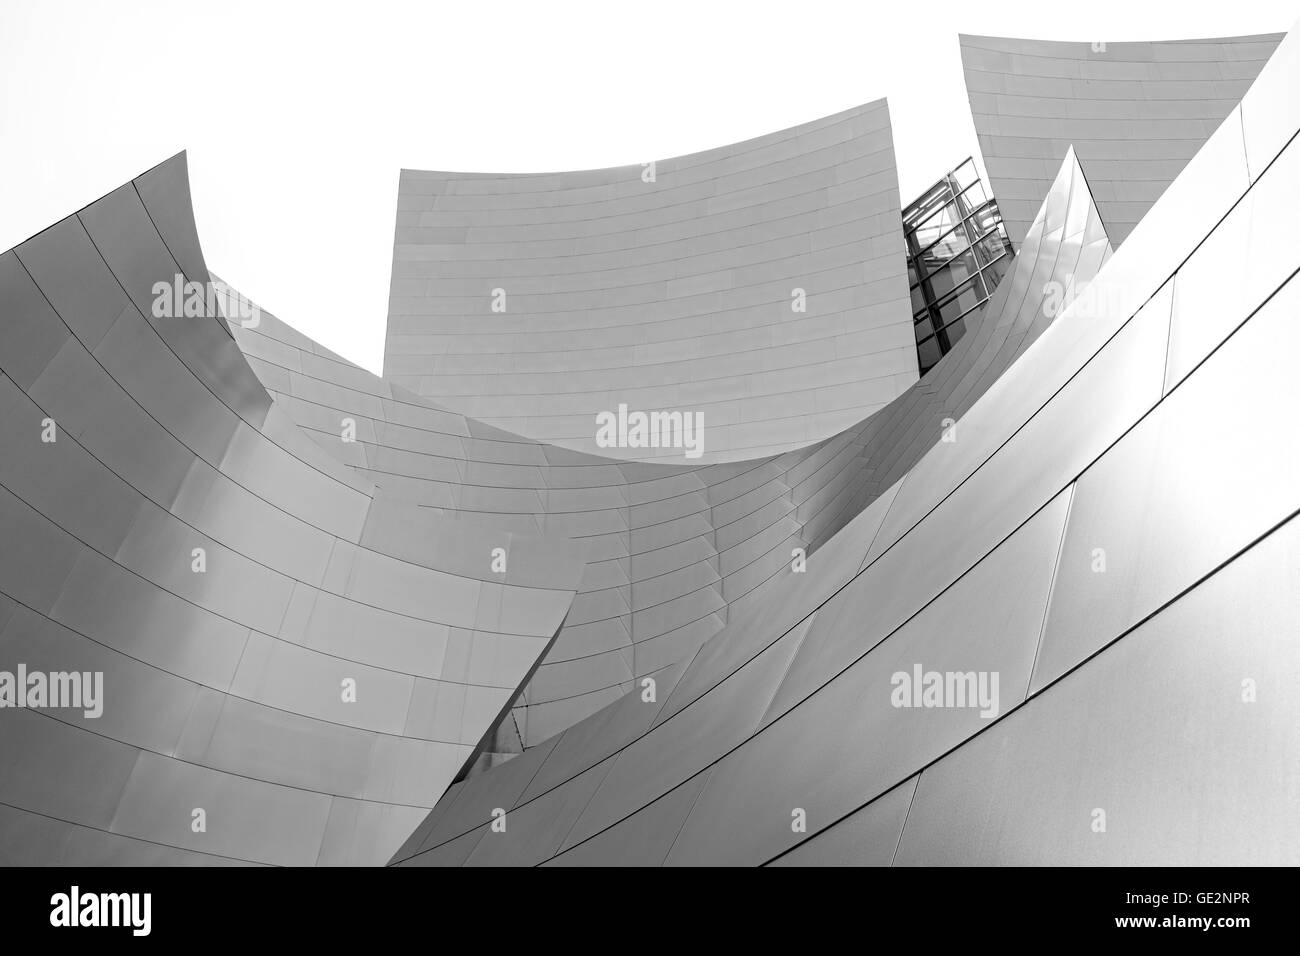 Walt Disney Concert Hall von dem Architekten Frank Gehry entworfen. Stockfoto